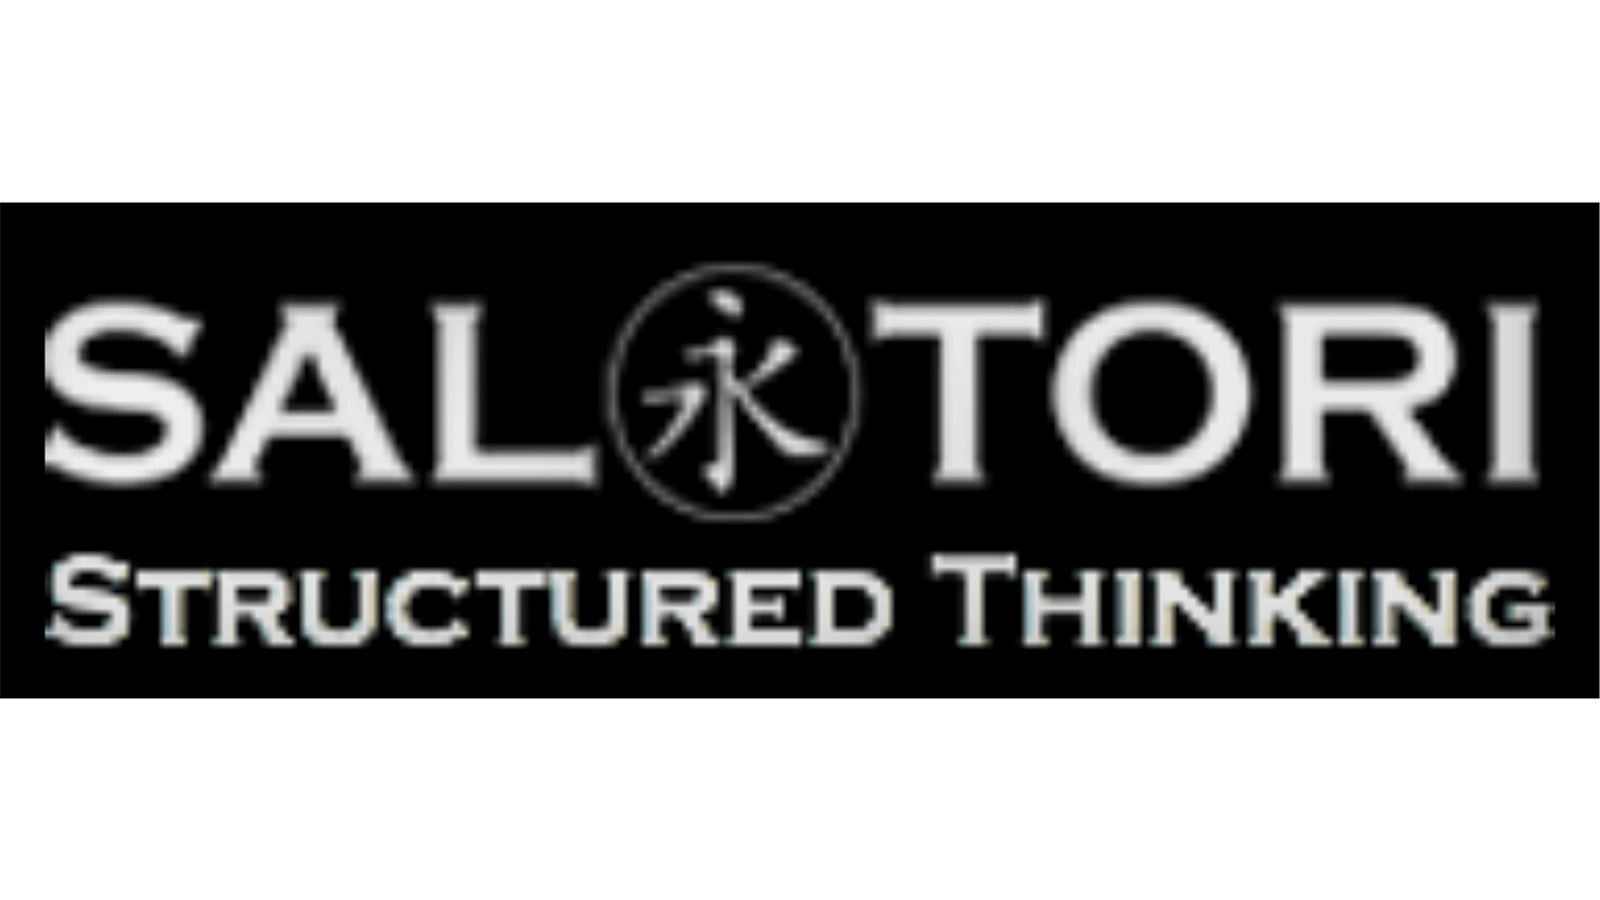 Saltori structured Thinking written in a black background